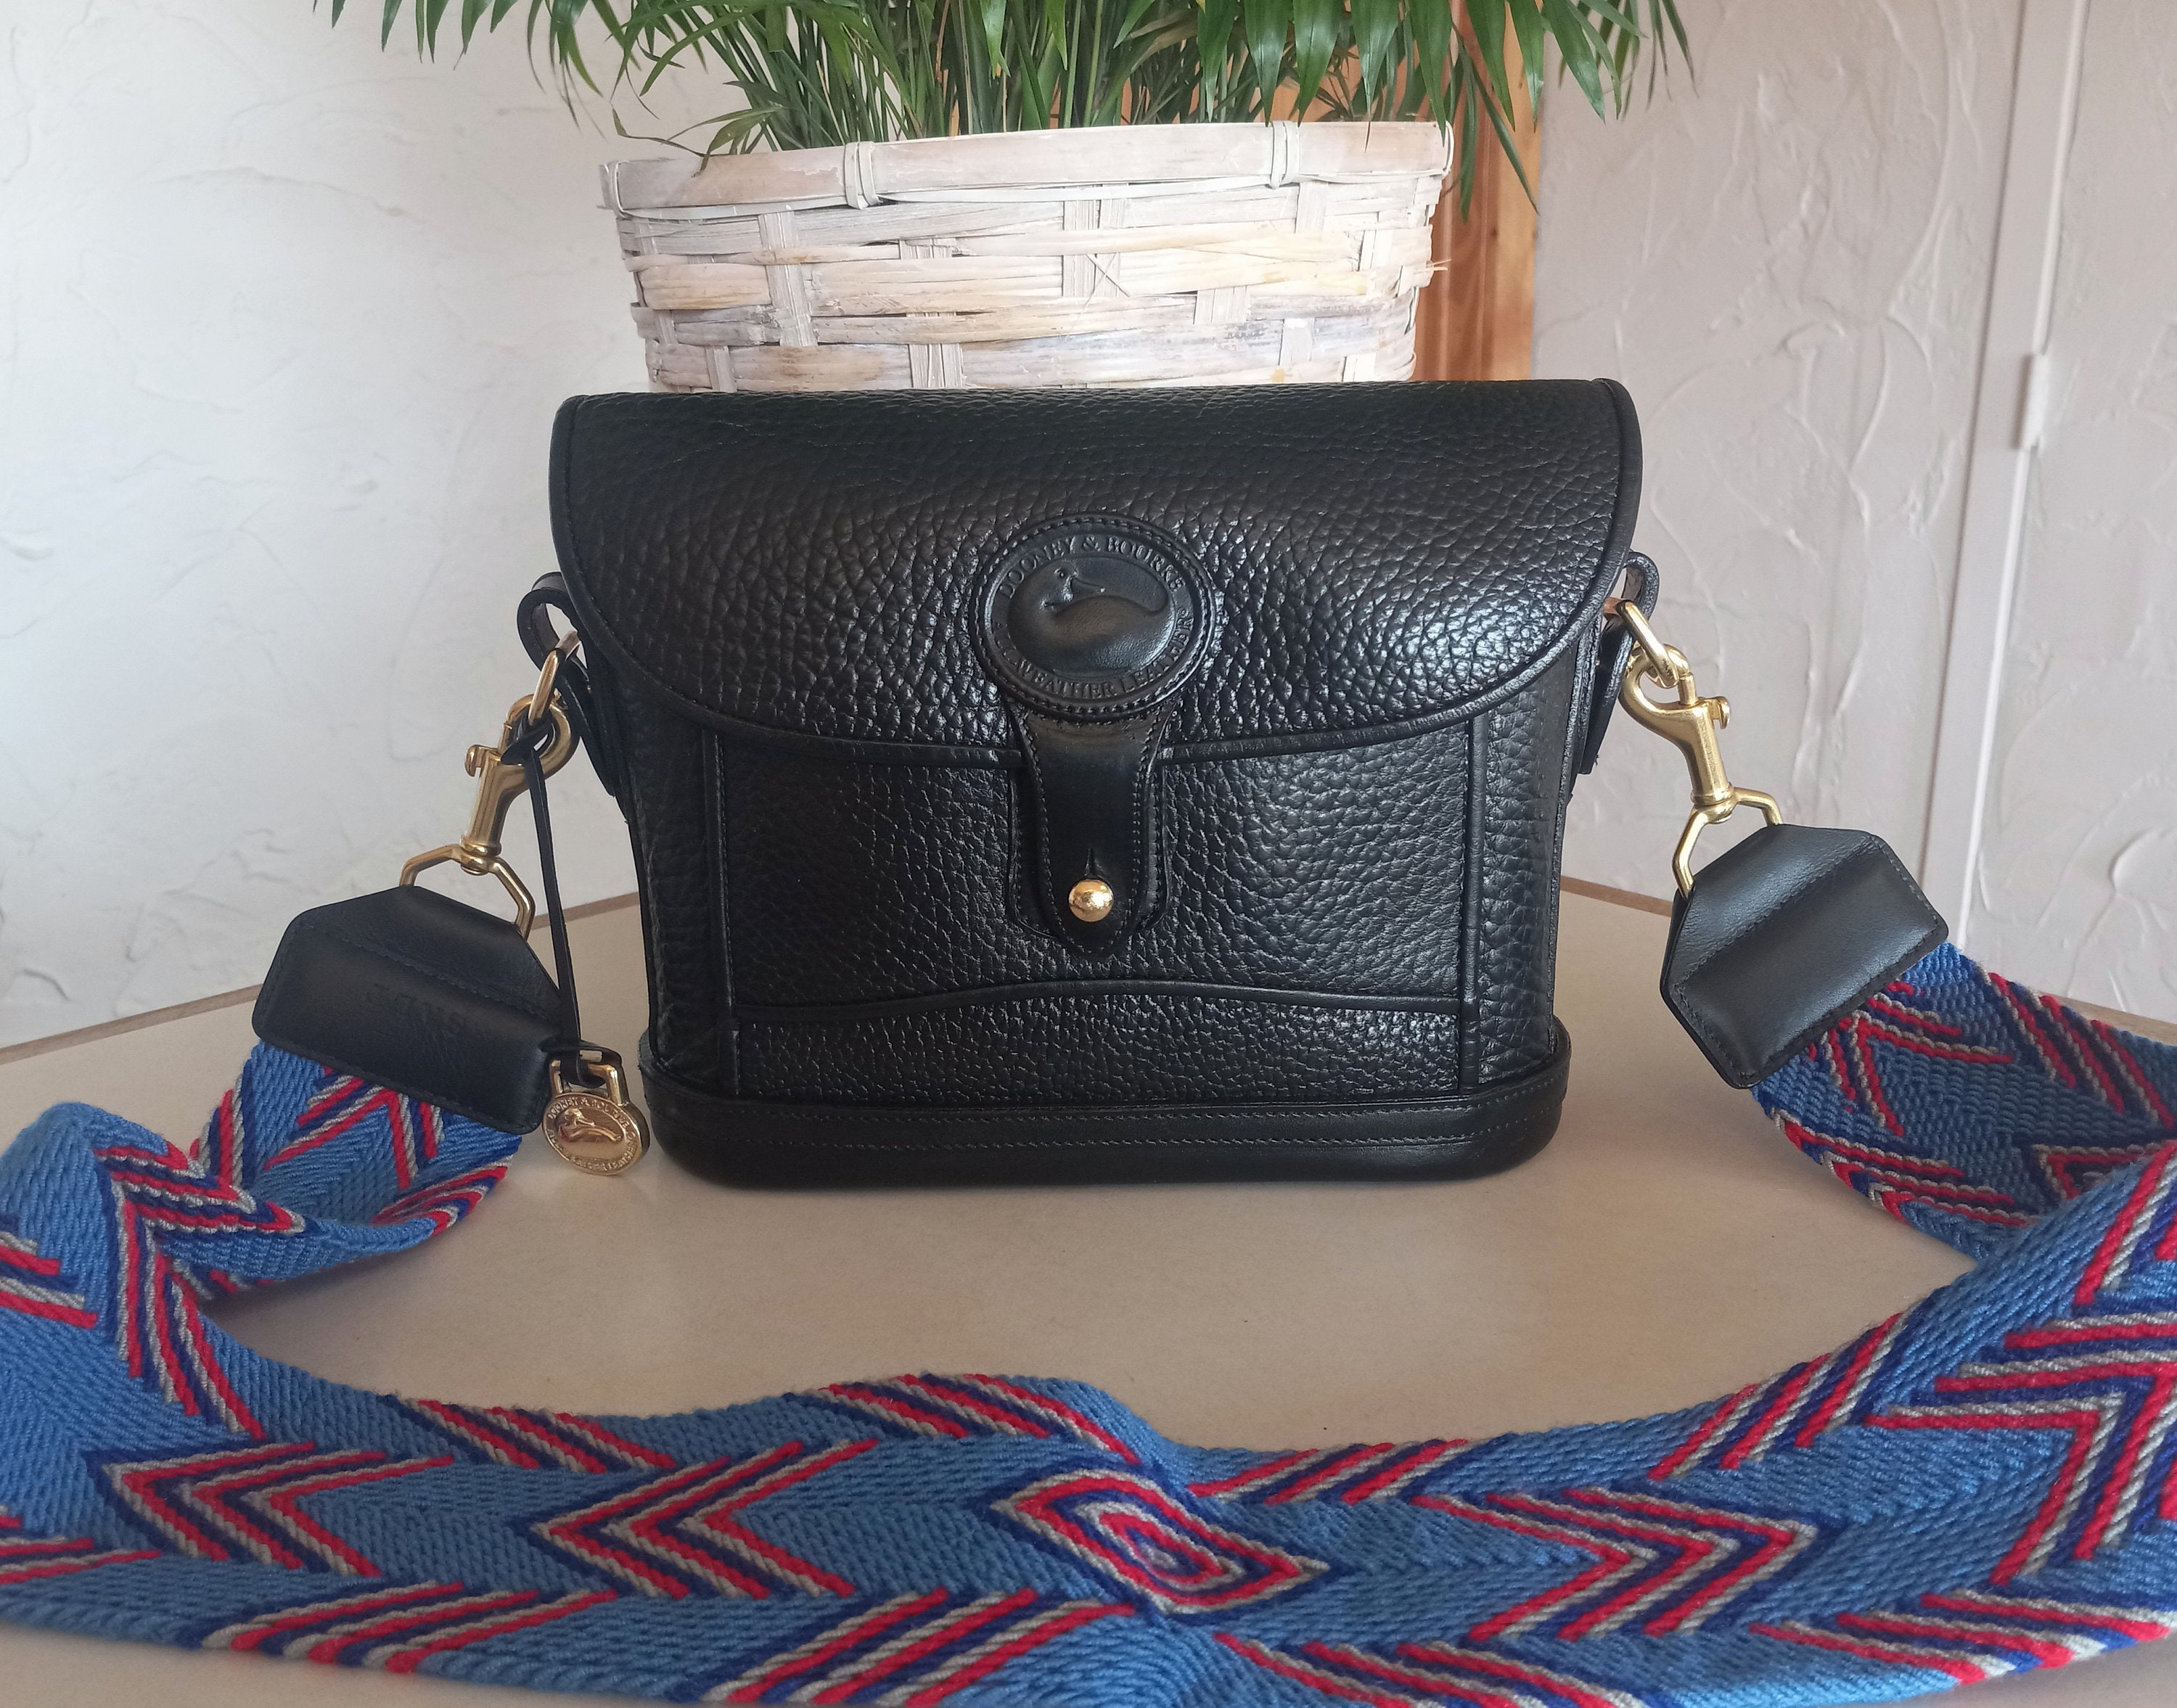 Dover Handbag – Jackal Leather